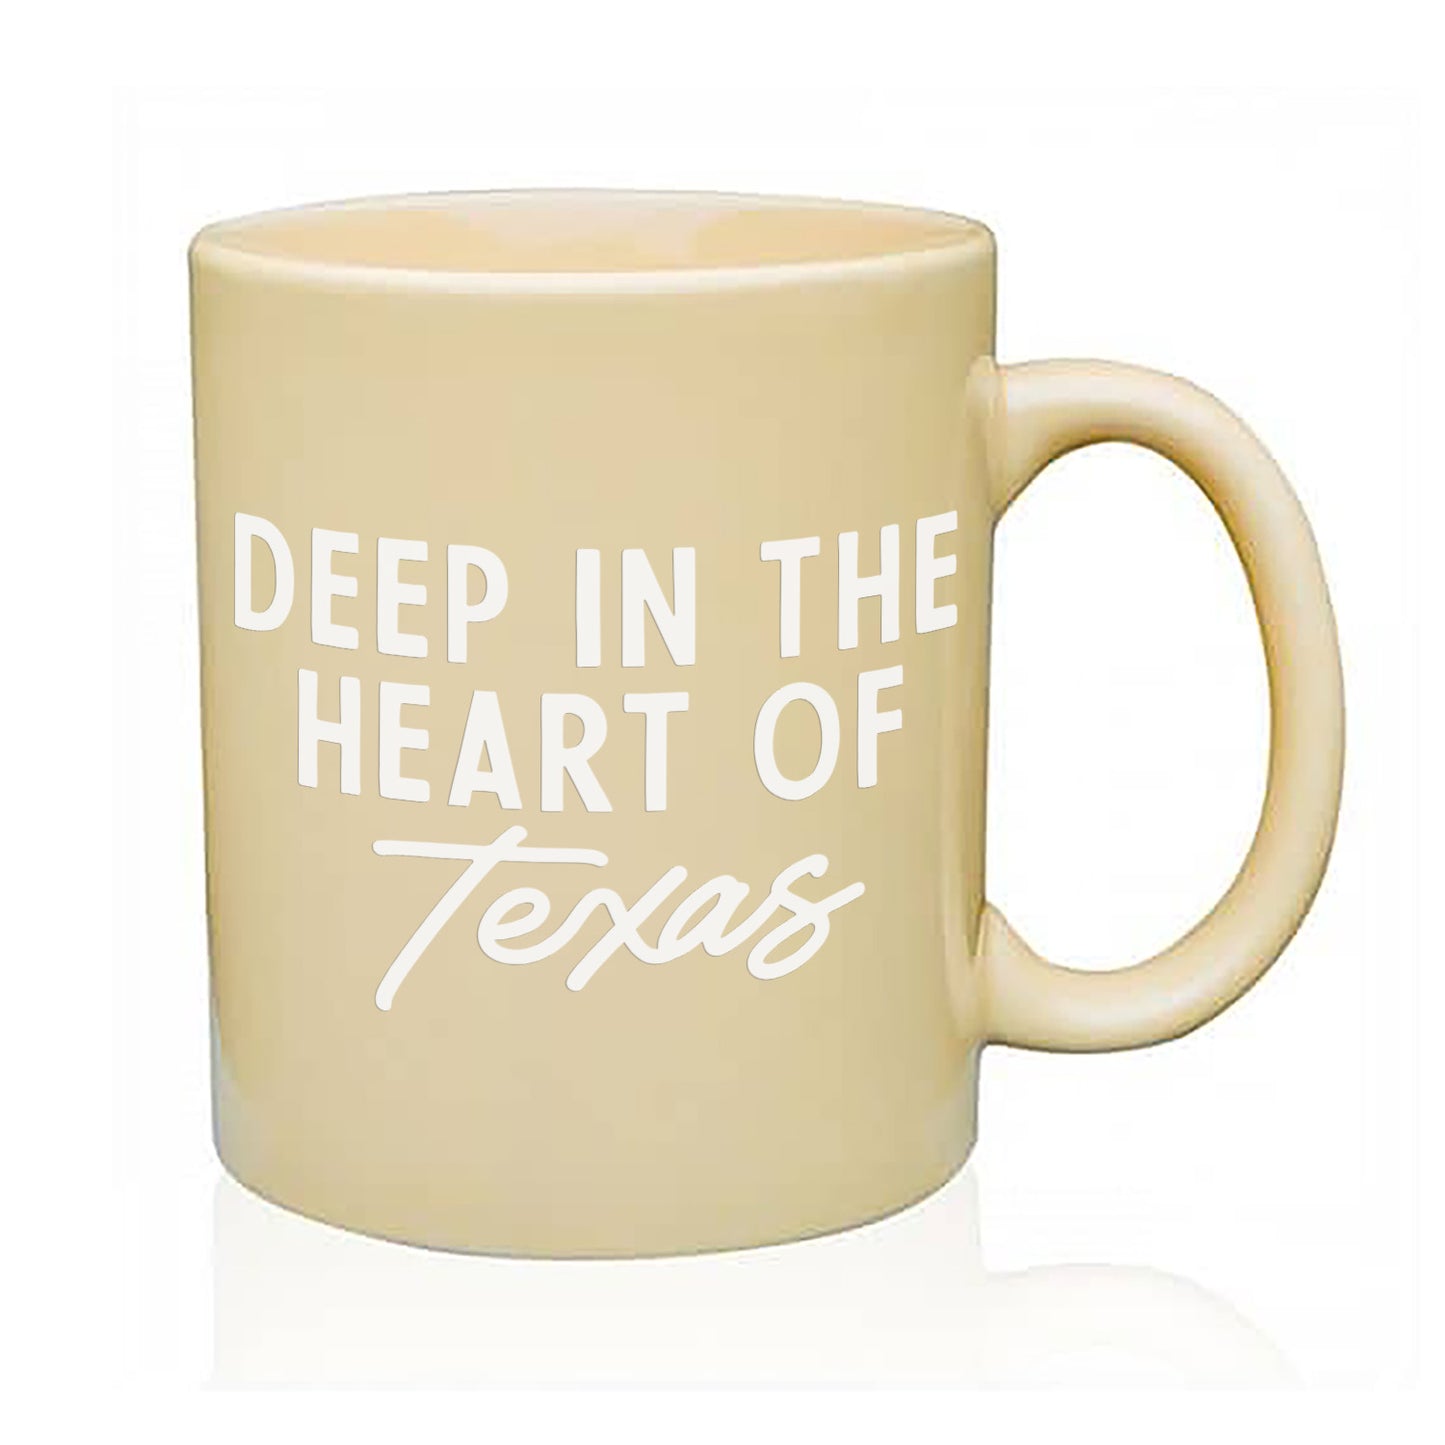 Deep in the Heart of Texas Coffee Mug